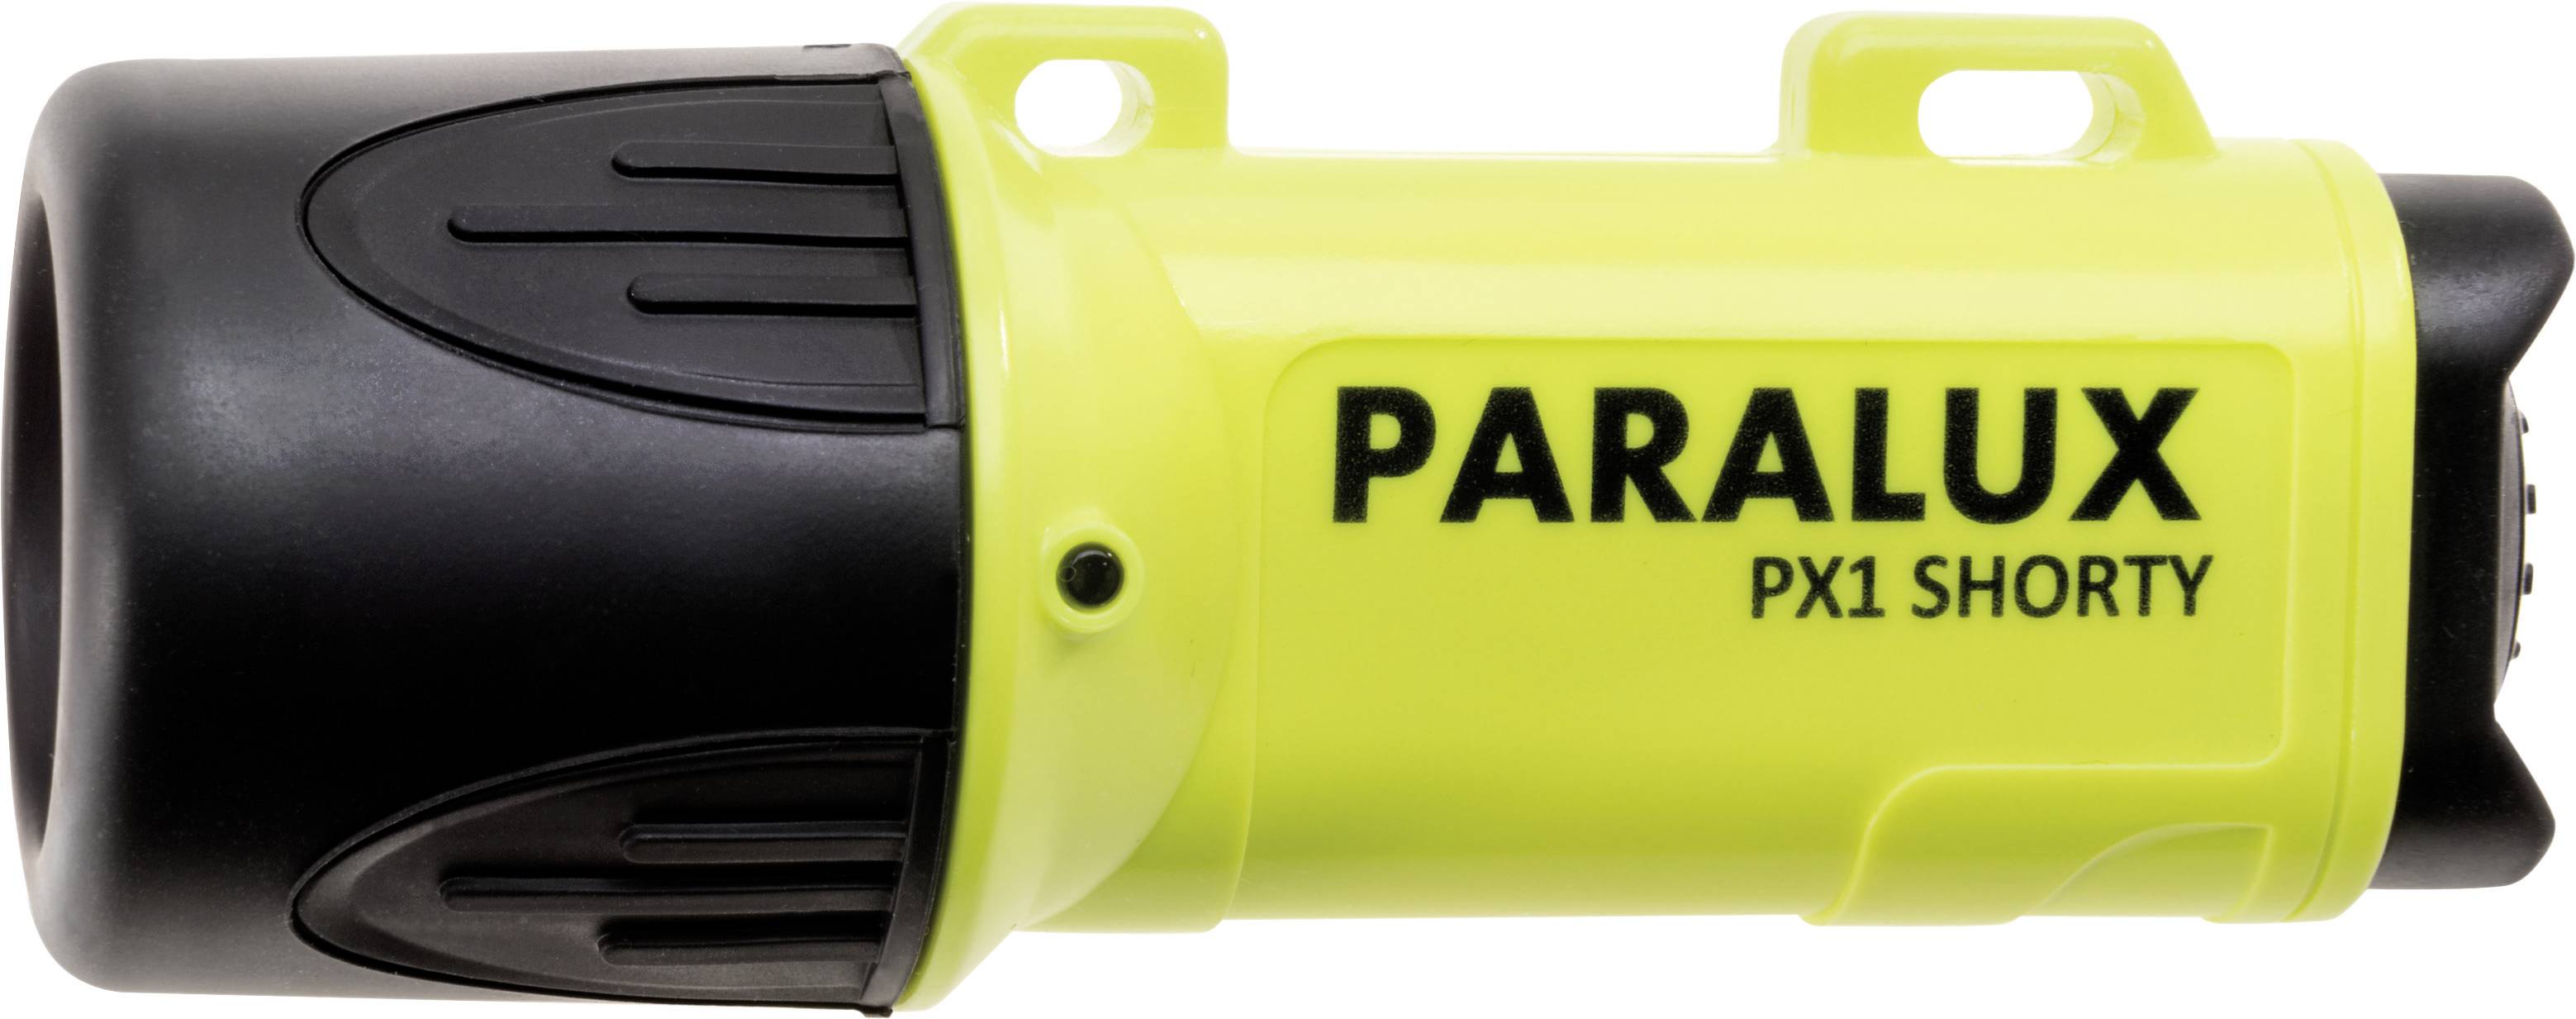 Bezpečnostní svítilna Paralux PX1 Shorty